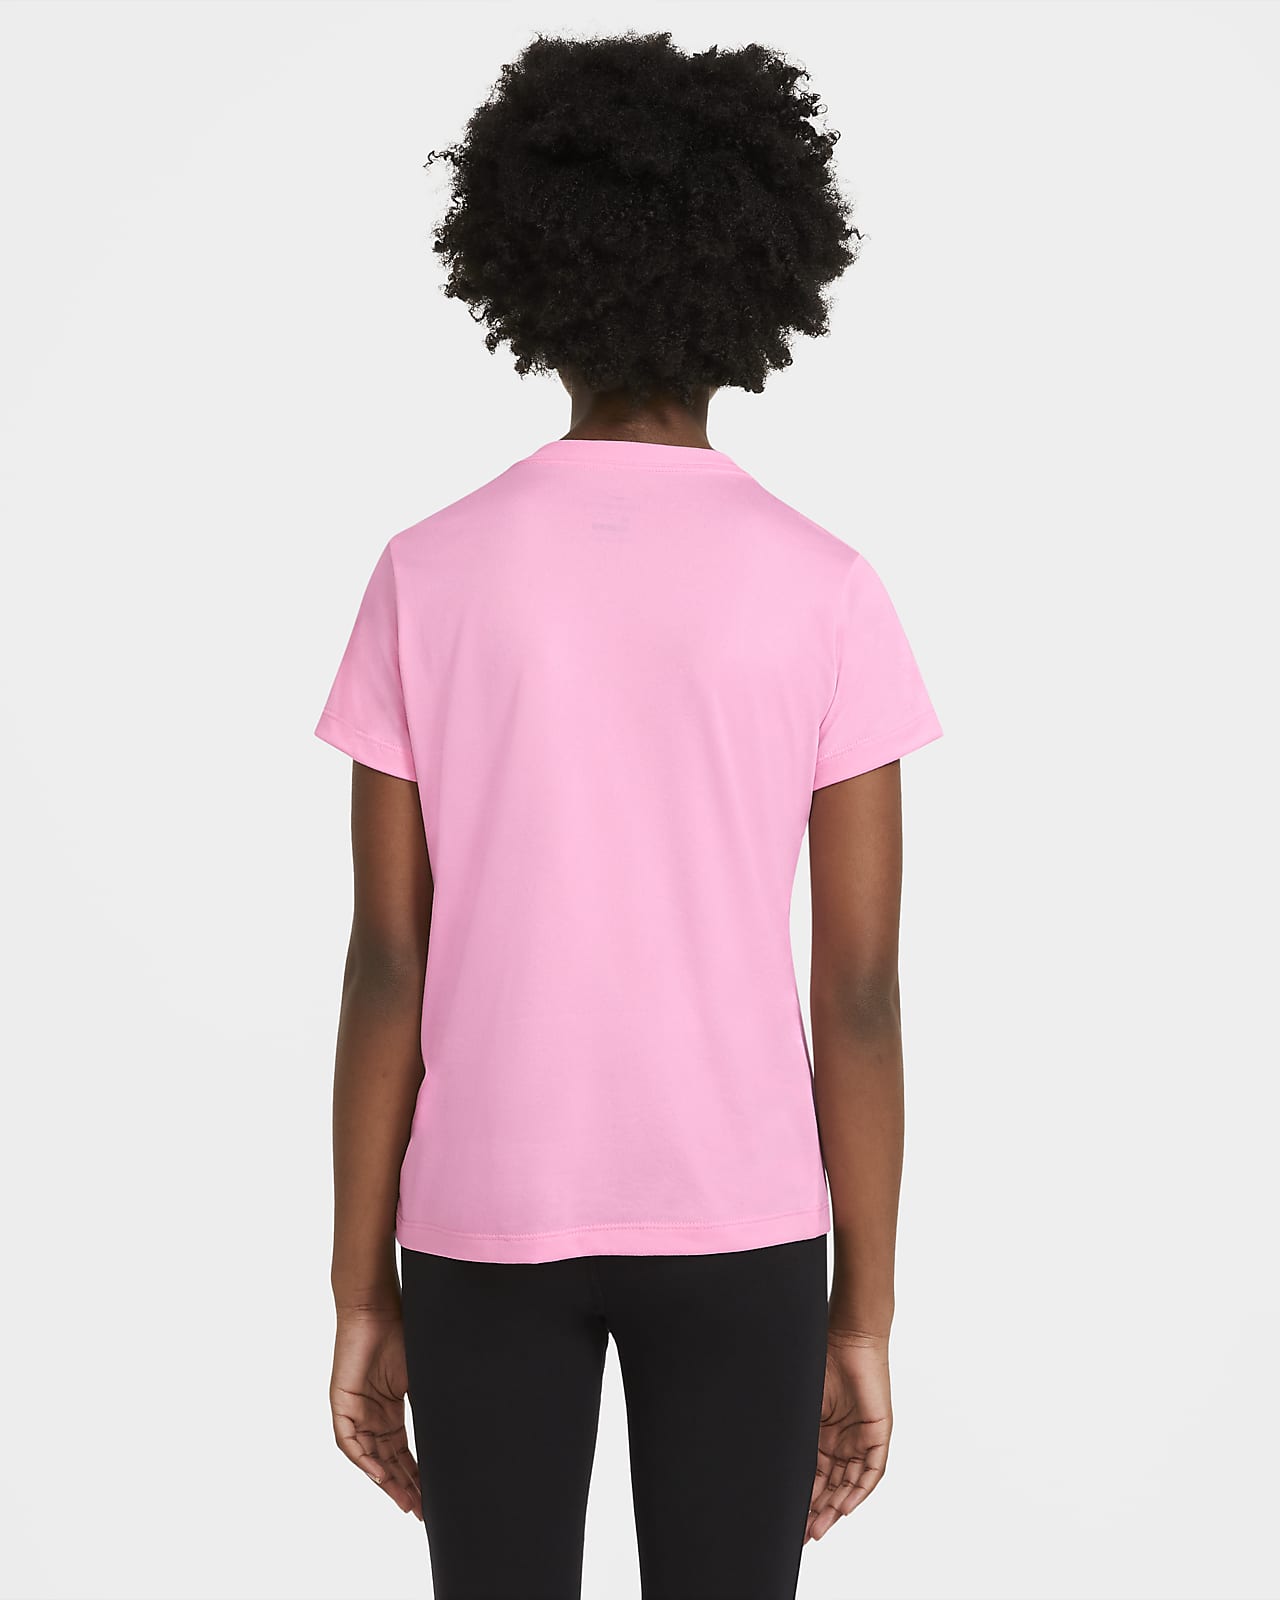 Nike Dri-FIT Big Kids' (Girls') T-Shirt 